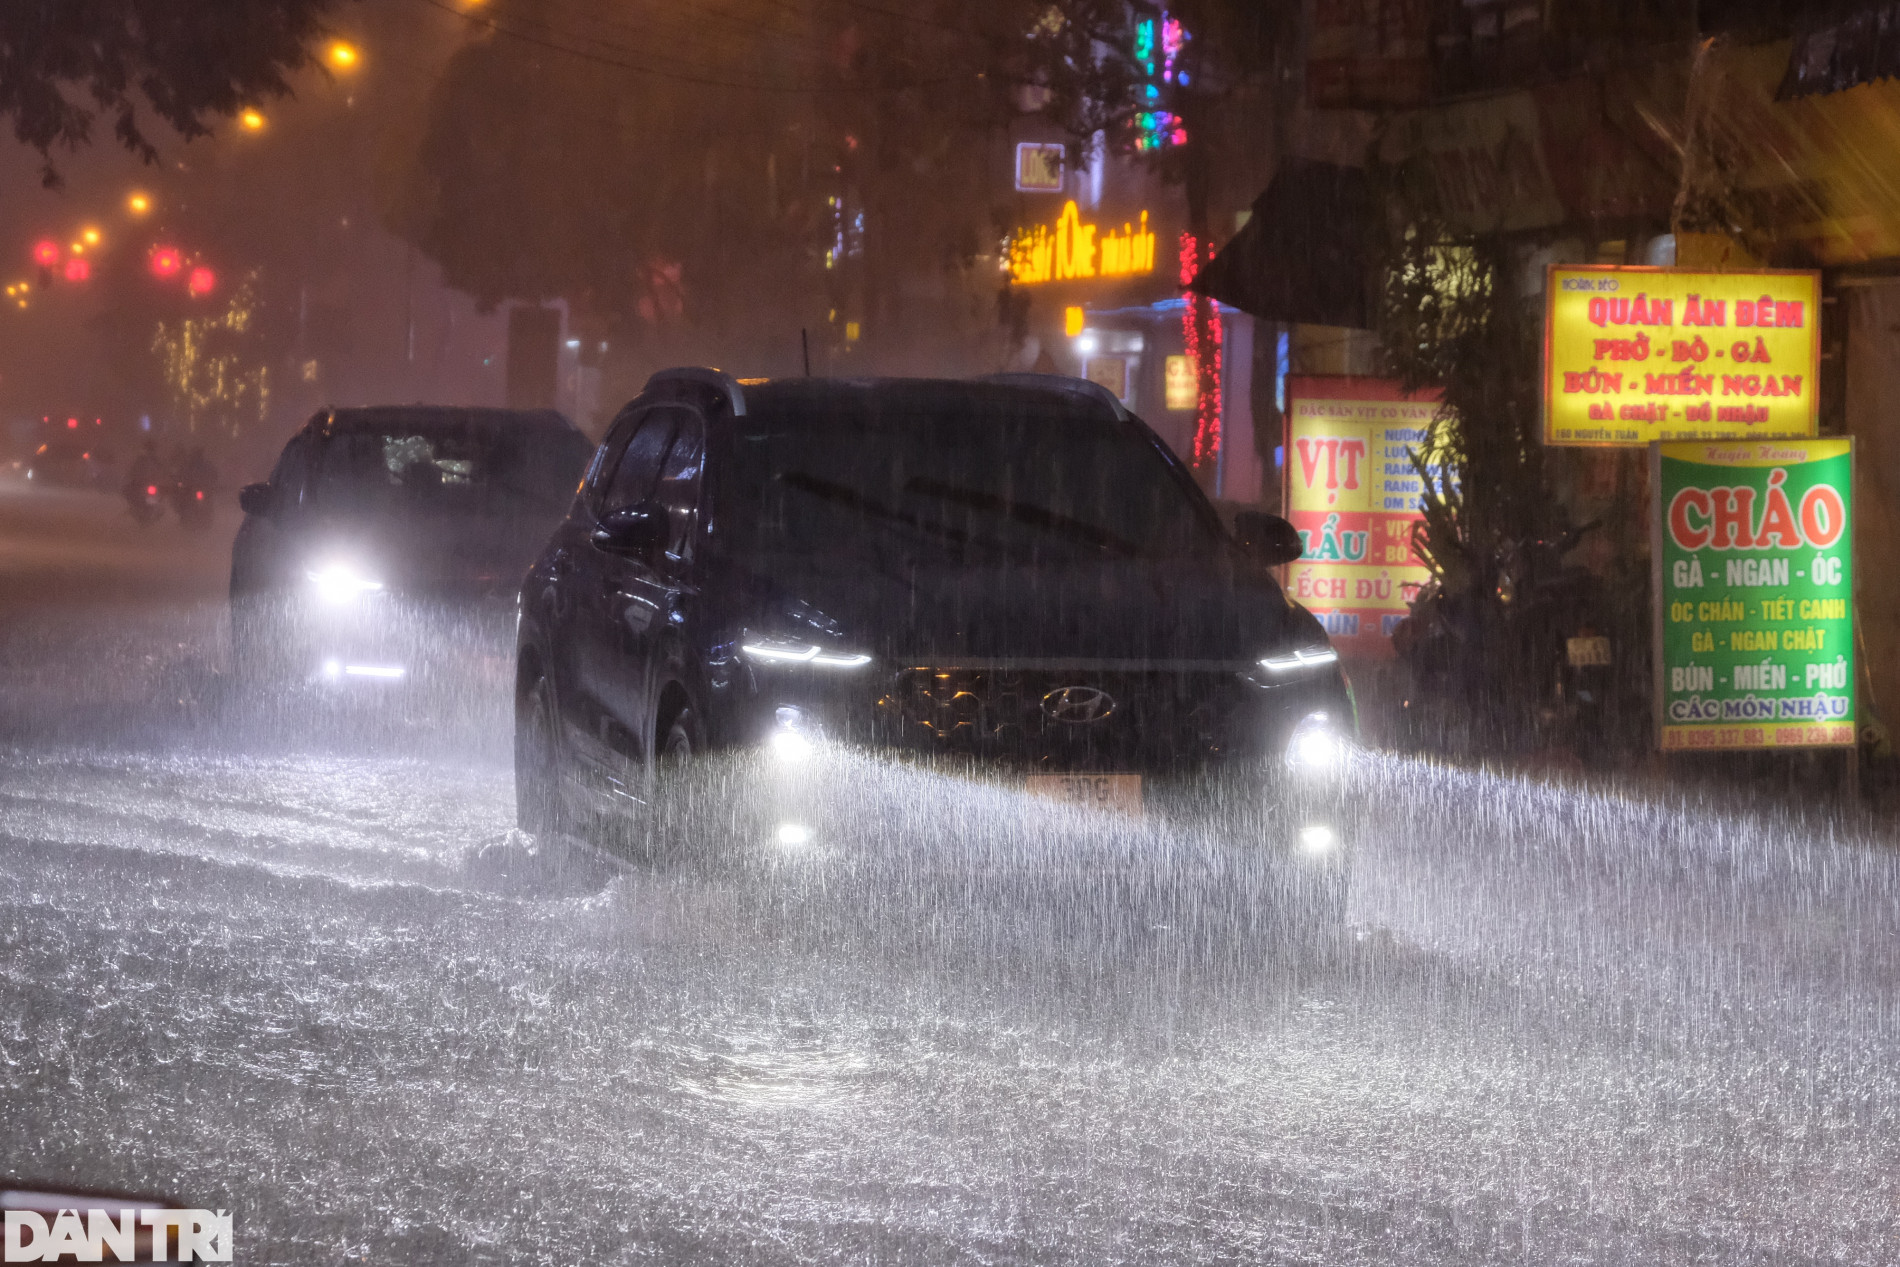 Nhiều nơi ở Hà Nội ngập trong biển nước sau cơn mưa lớn - 1